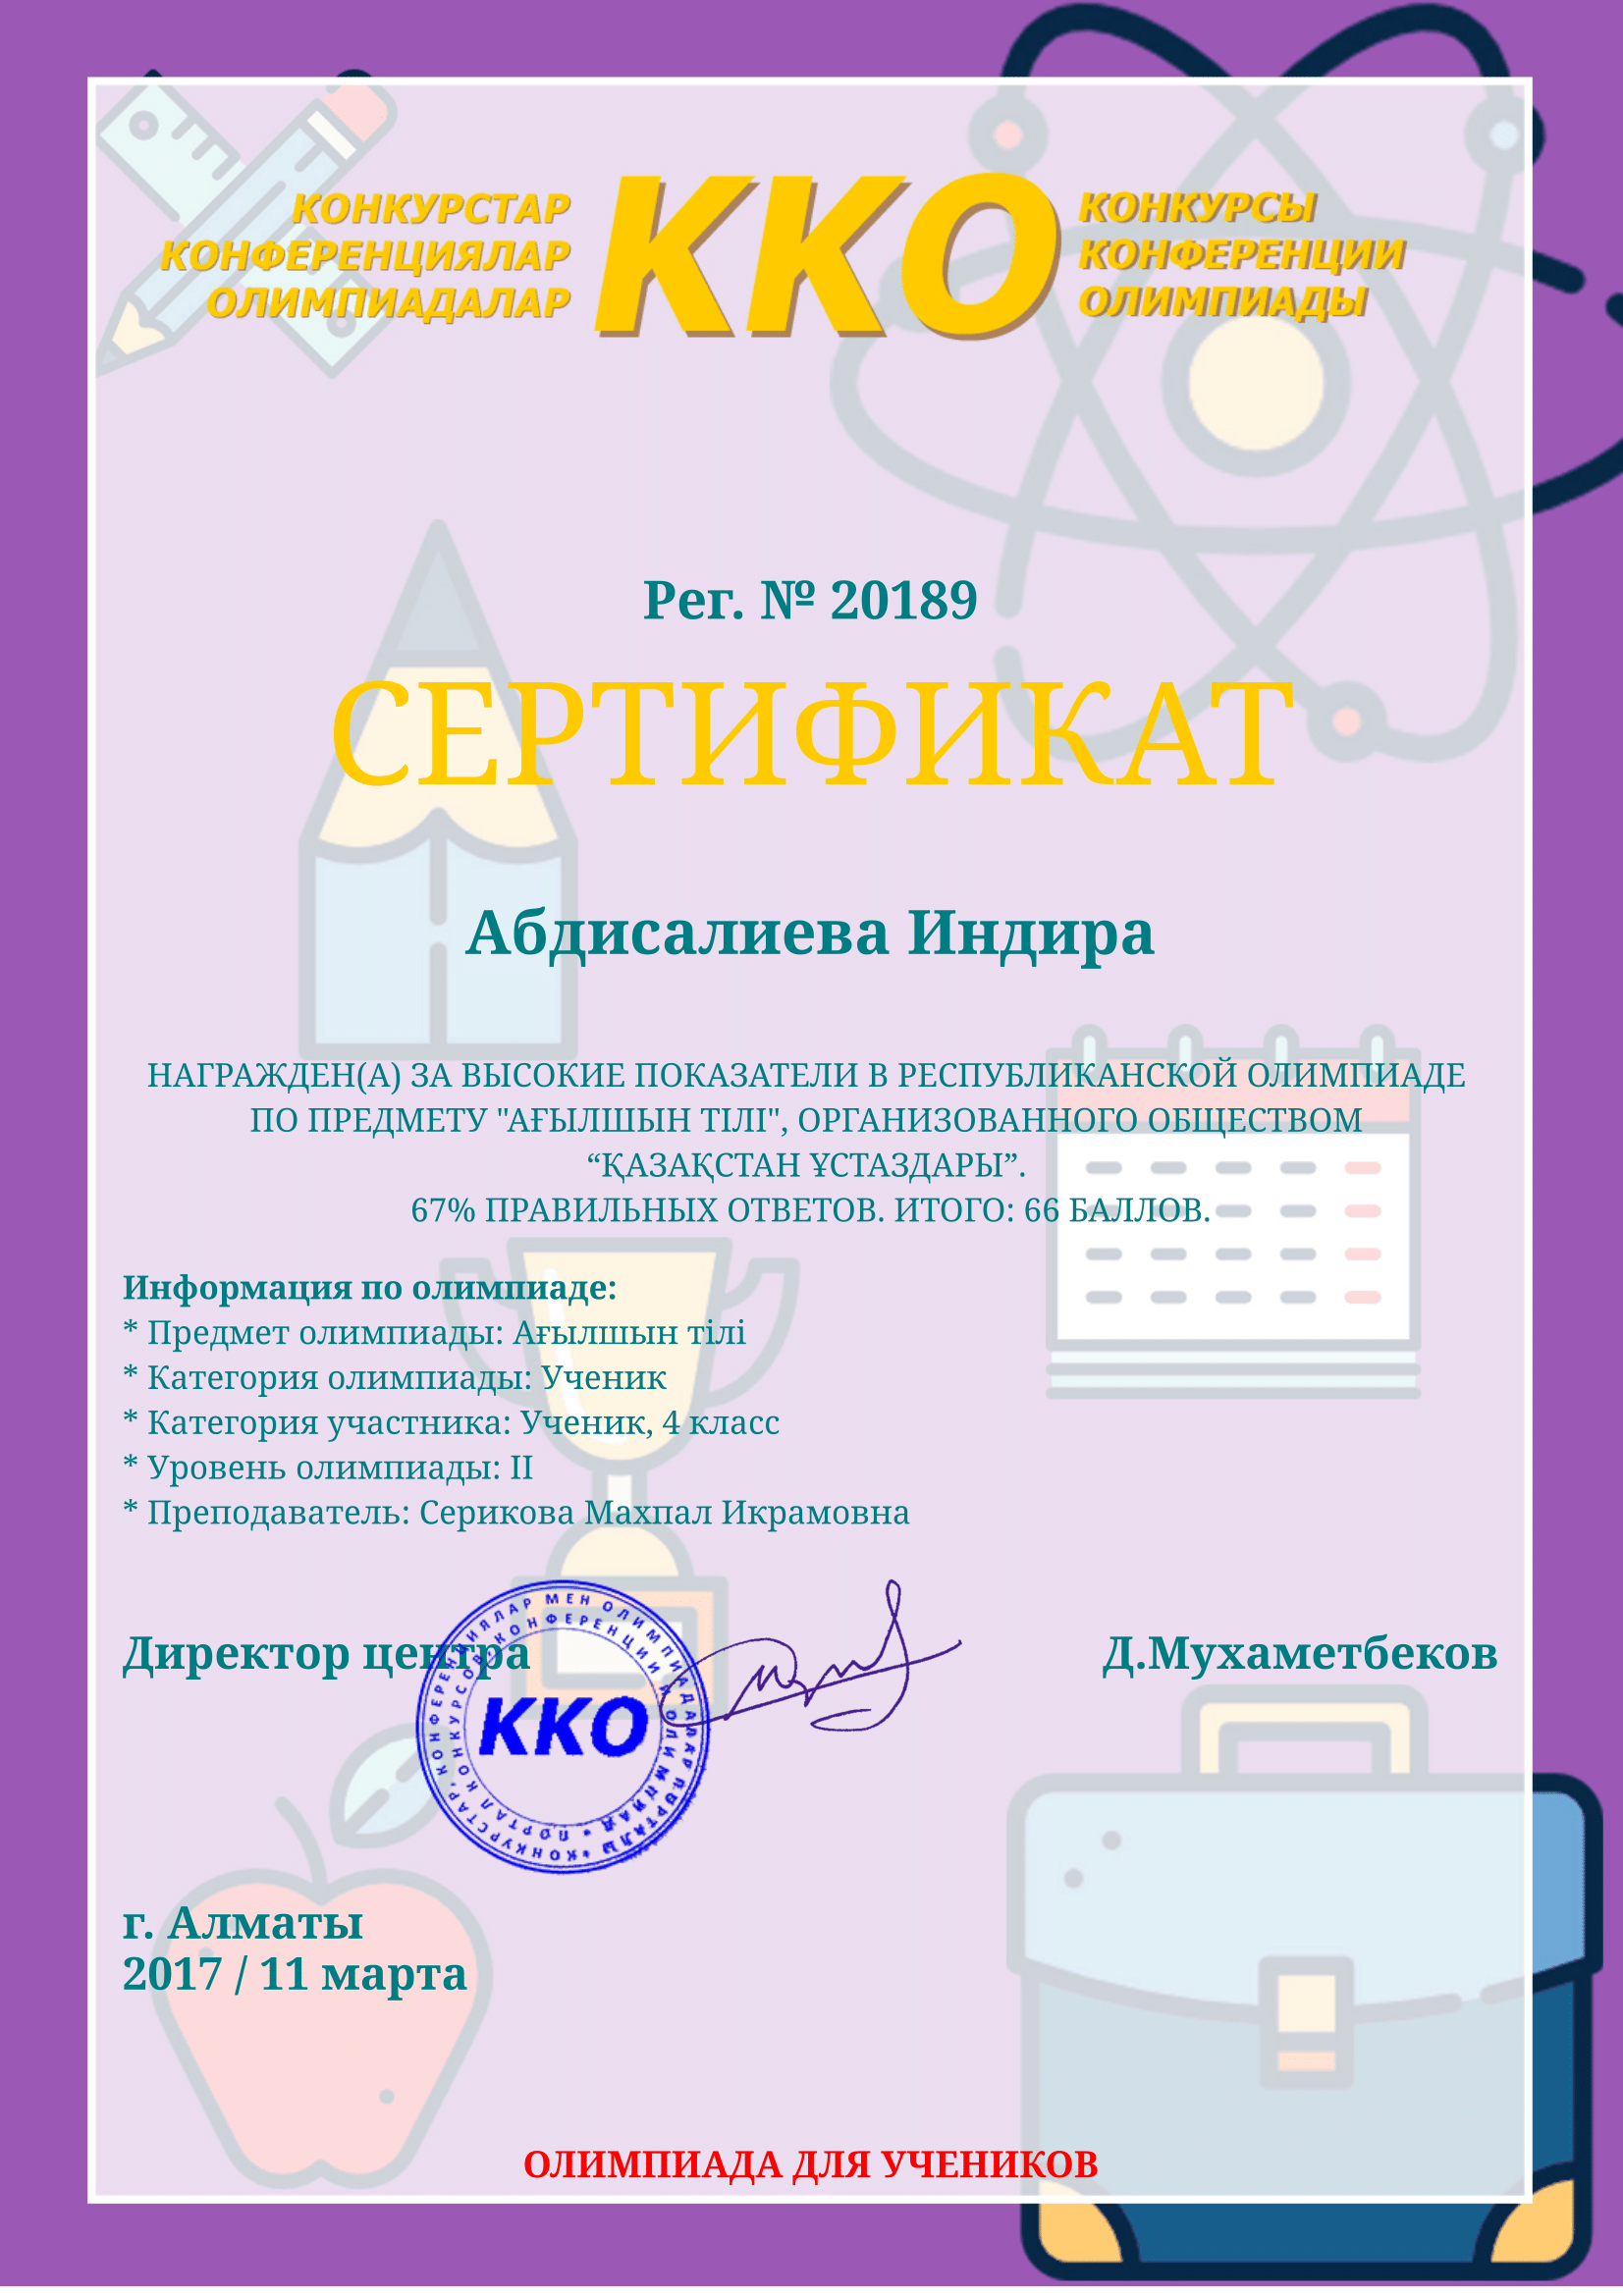 Сертификат Абдисалиева Индира